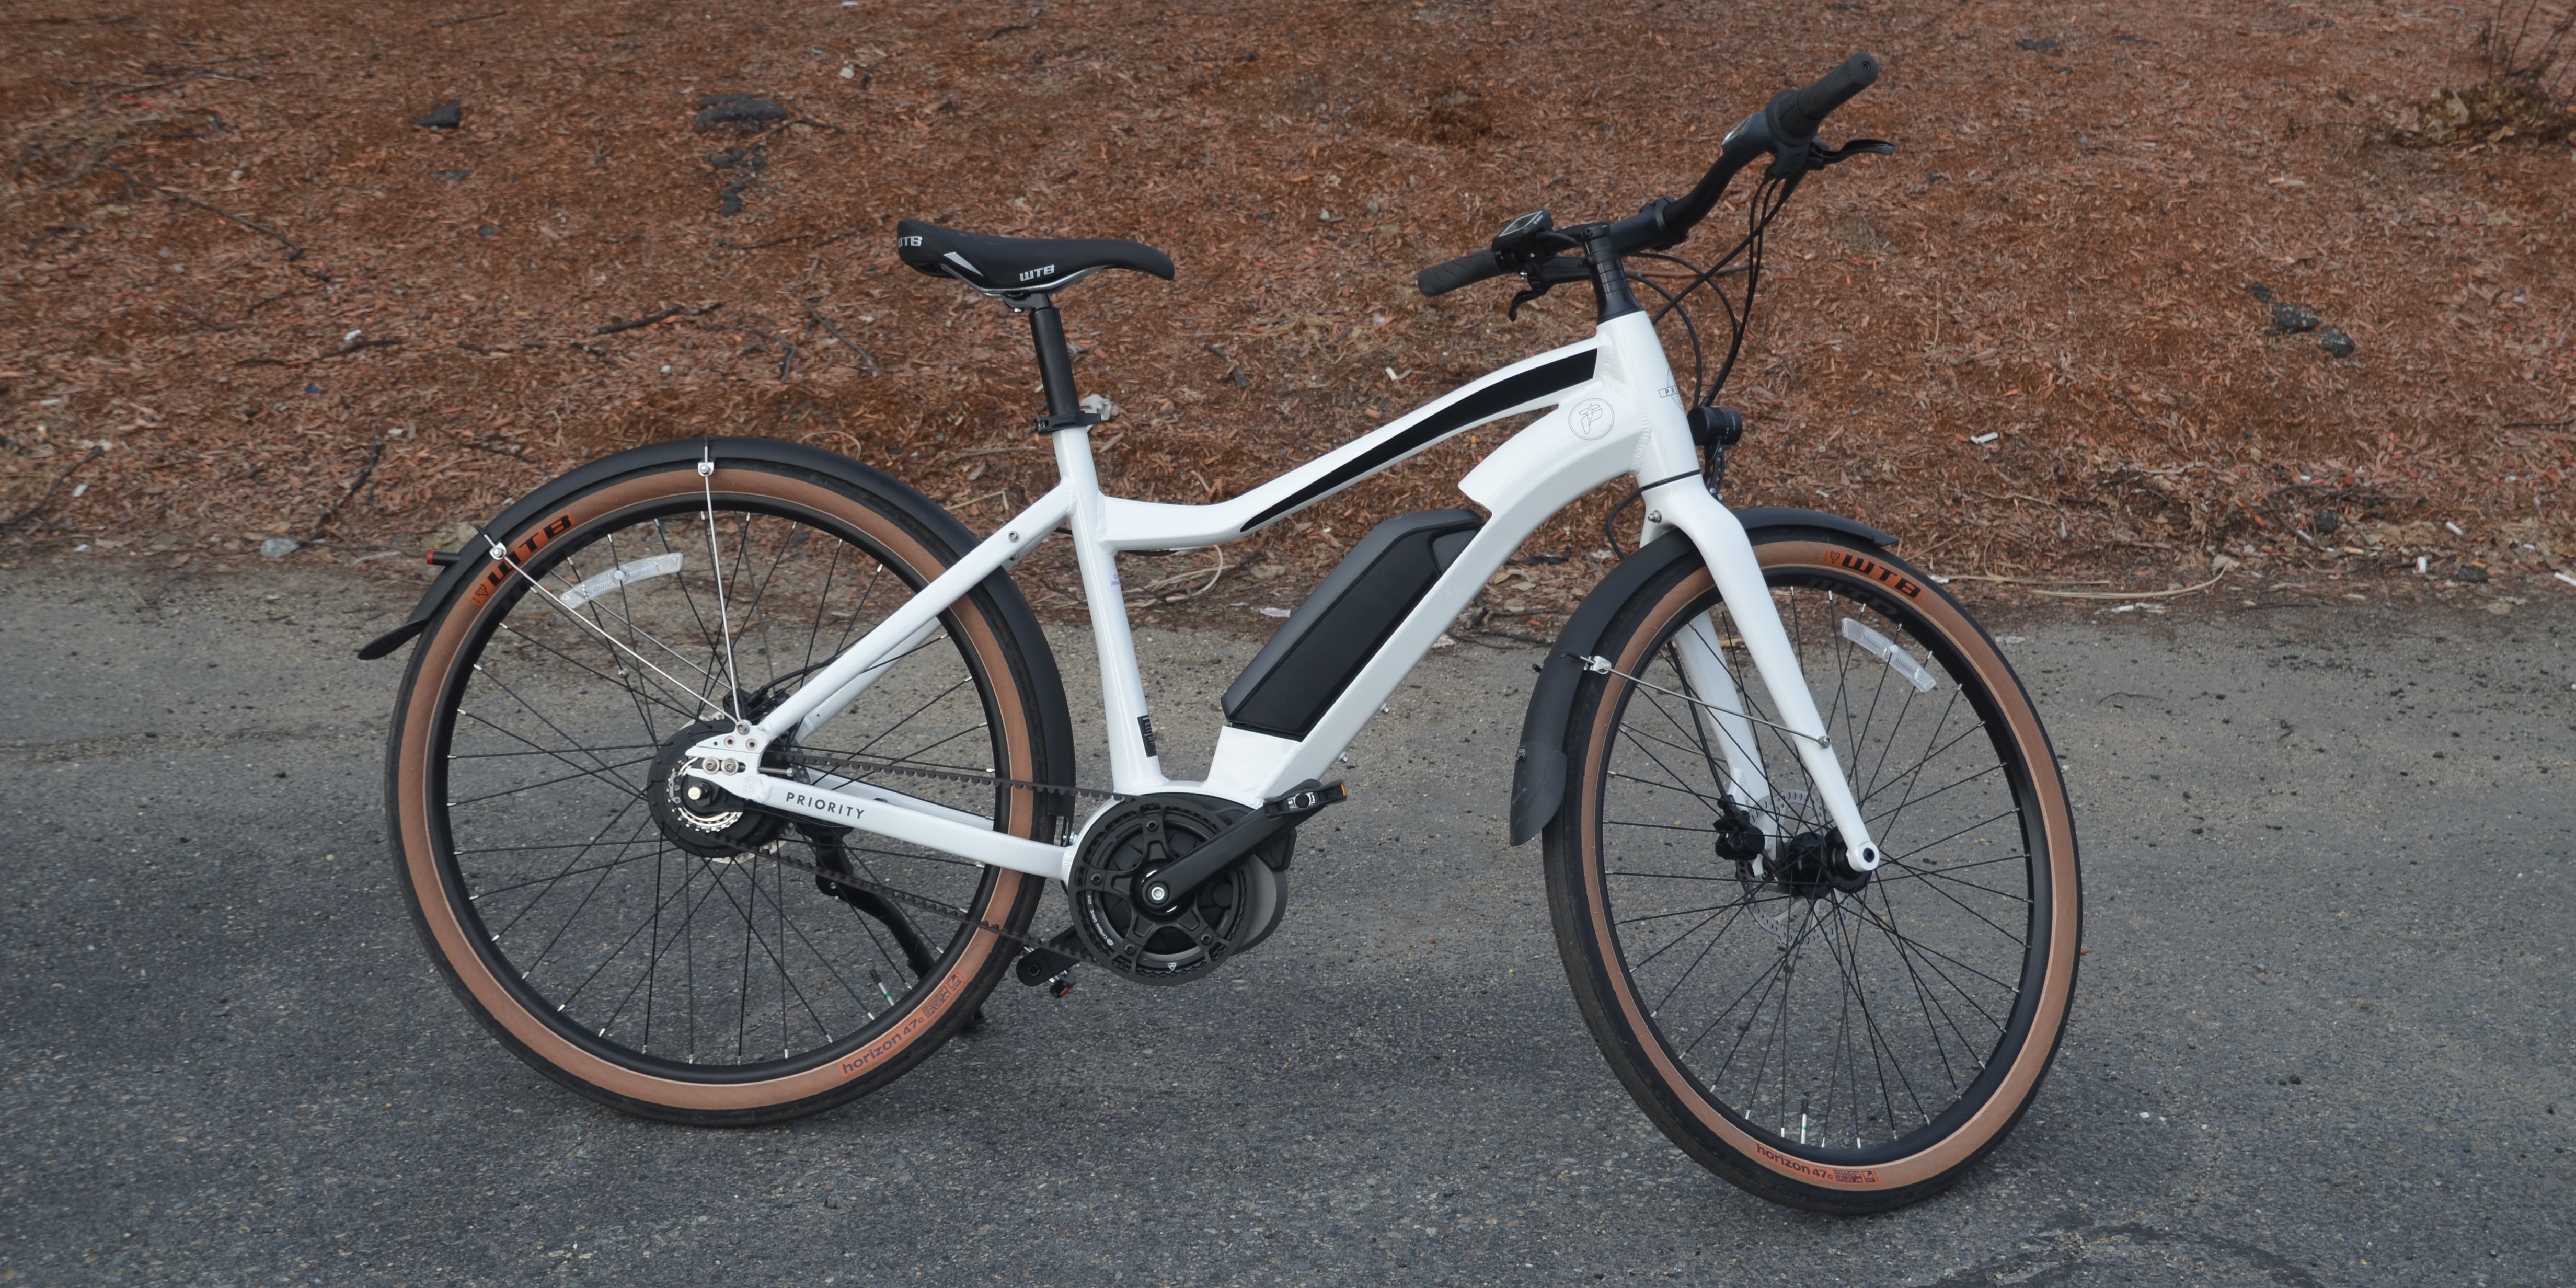 electric bike buying guide 2019